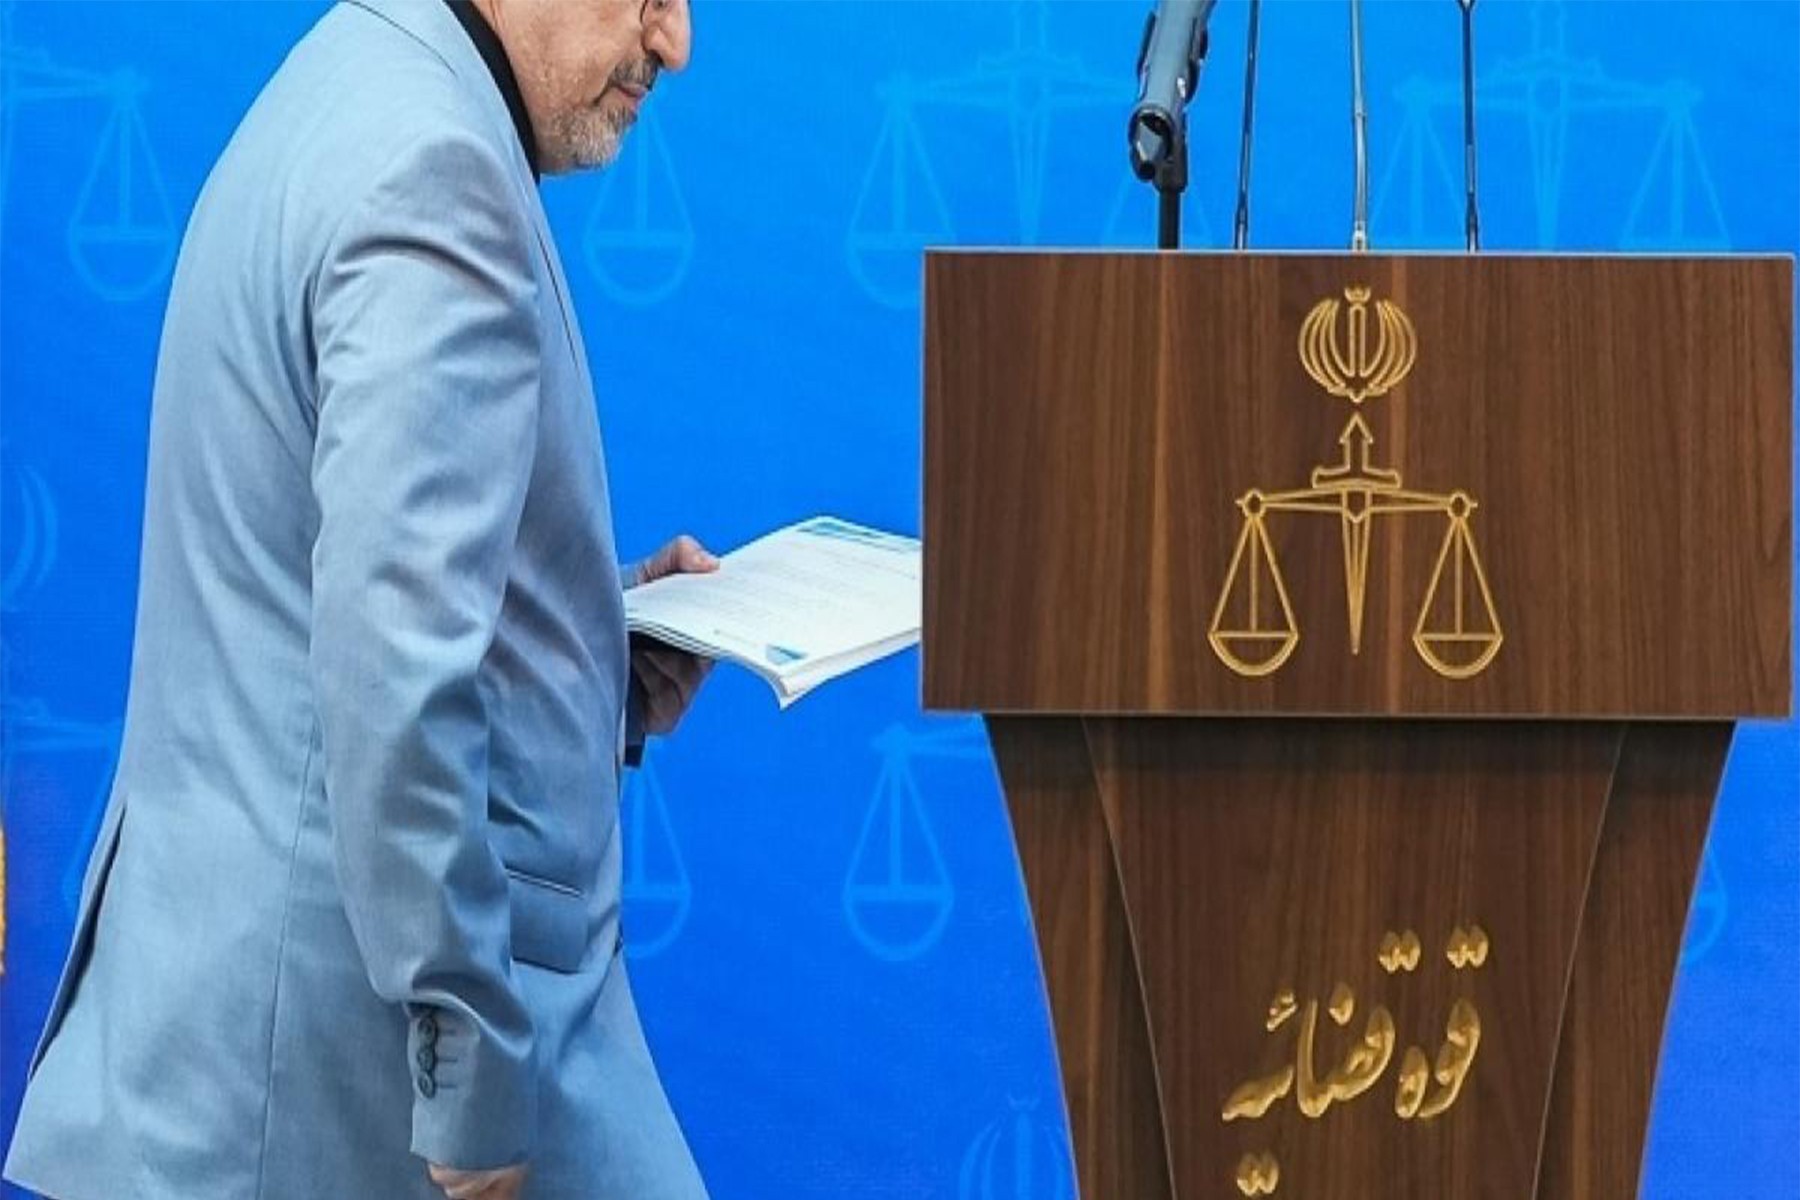 سخنگوی قوه قضائیه جمهوری اسلامی بعد از چند روز انکار سرانجام هک شدن اسناد قضایی را تایید کرد